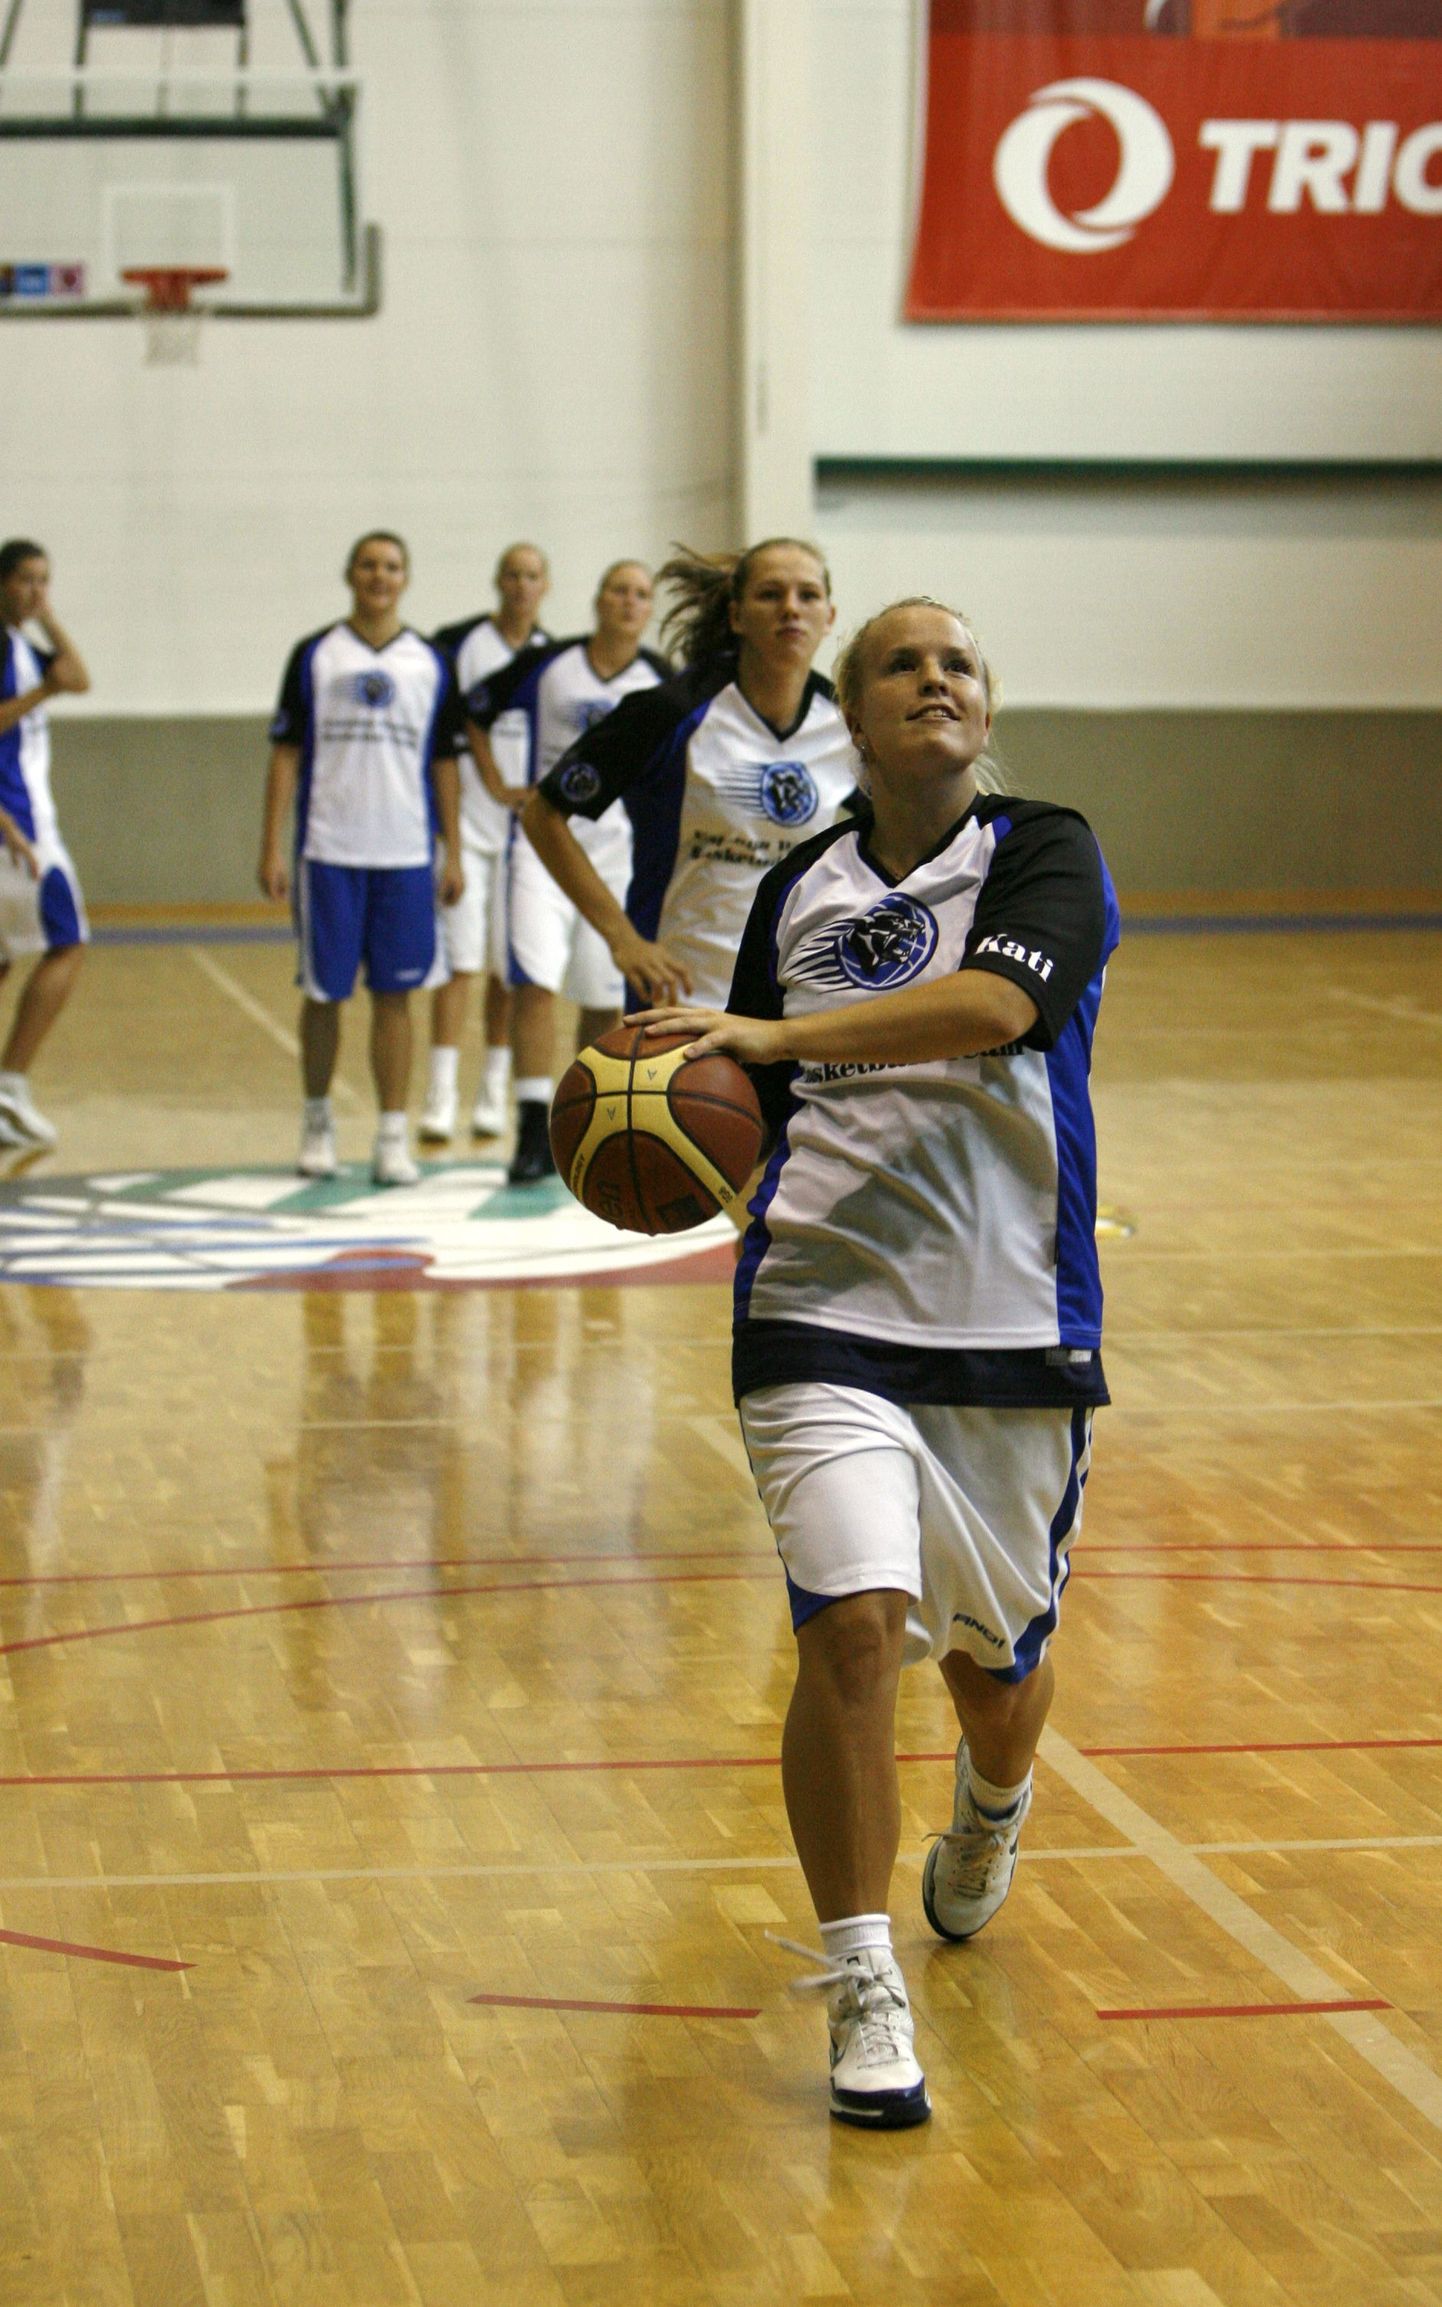 Eesti naiste korvpallikoondise treening, esiplaanil Kati Rausberg.